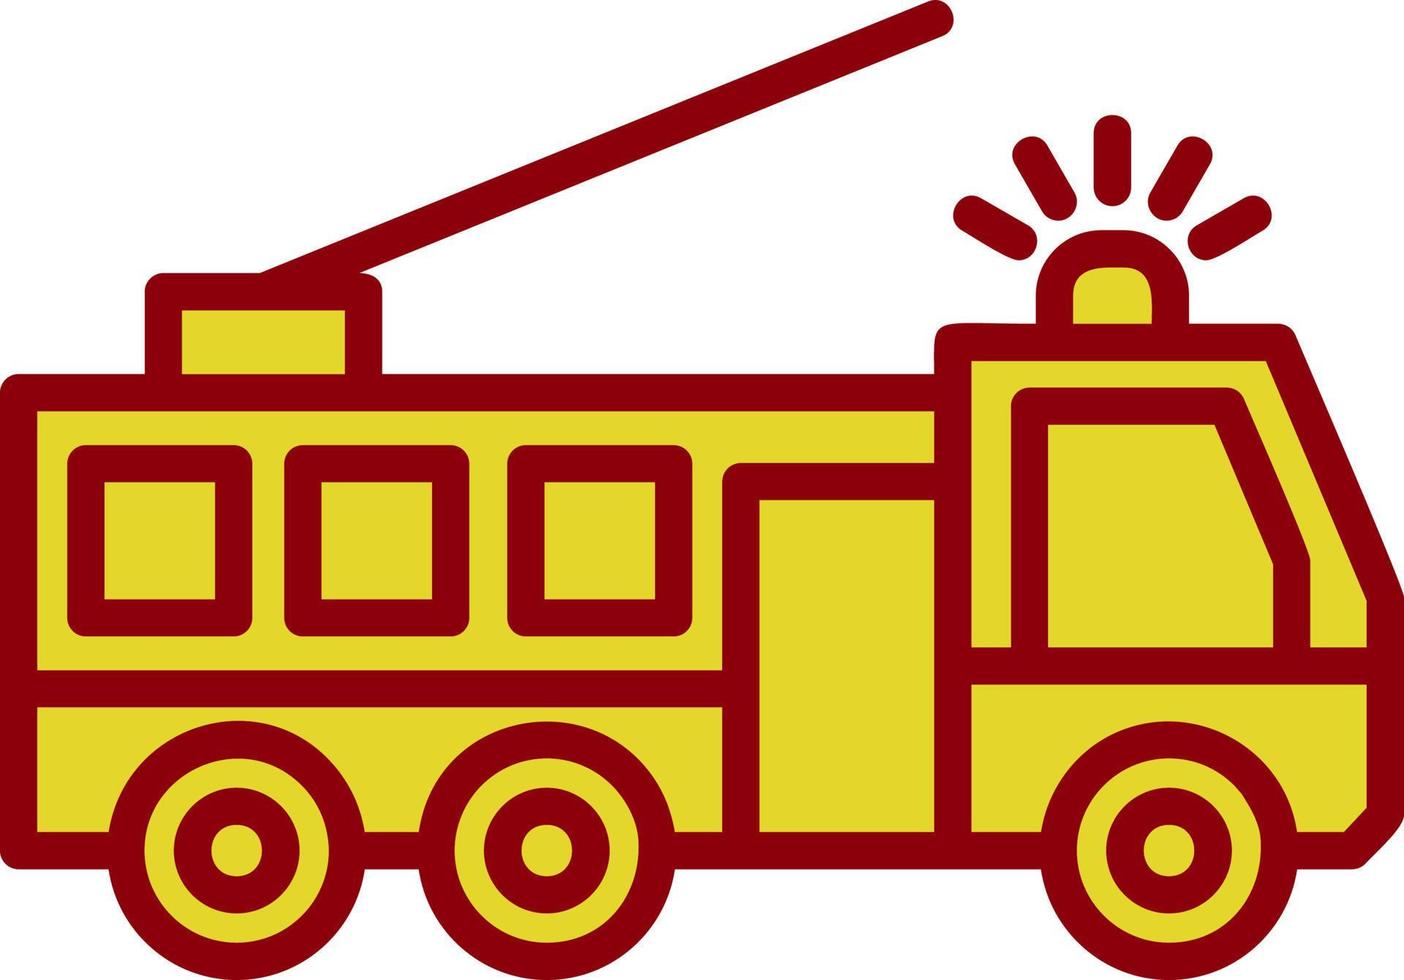 Fire Truck Vector Icon Design